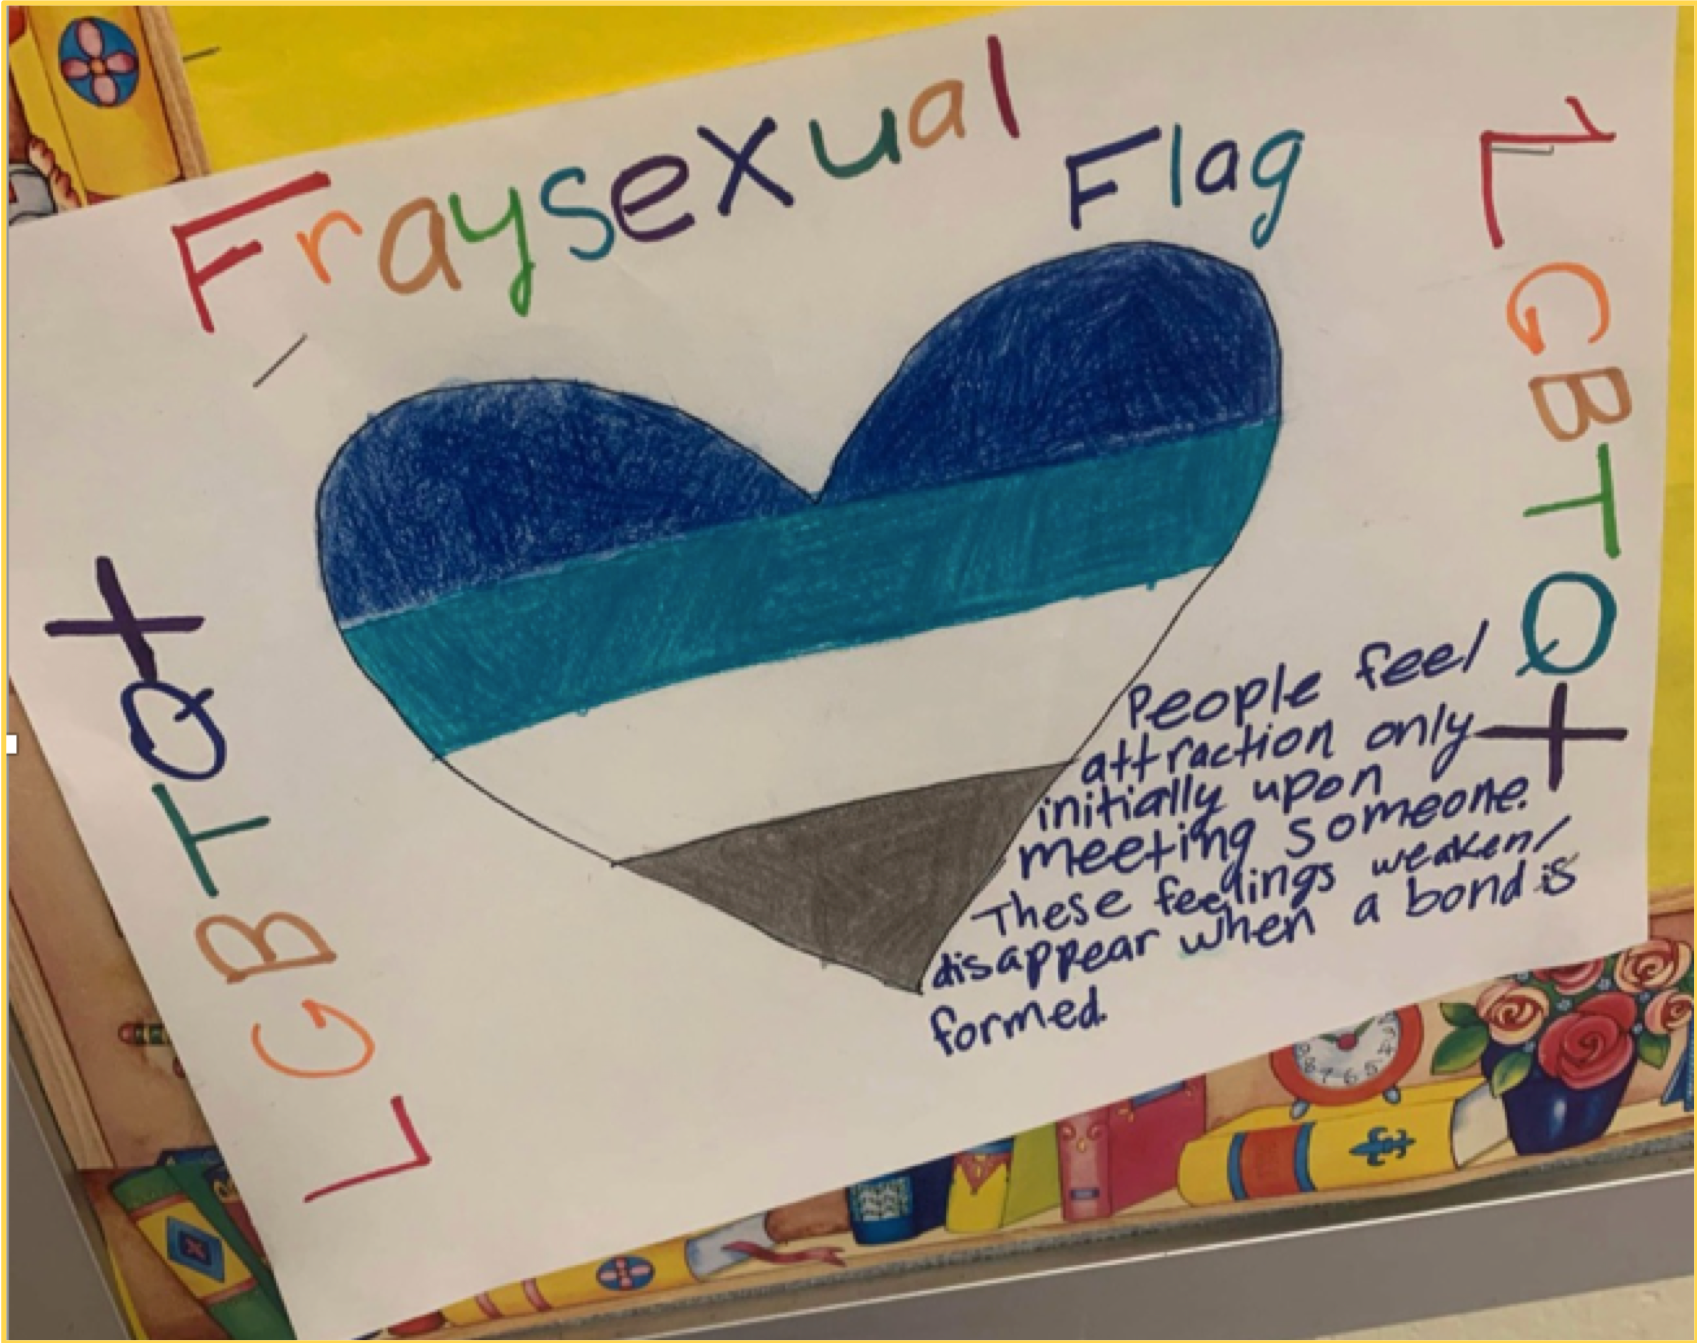 Fraysexual Flag